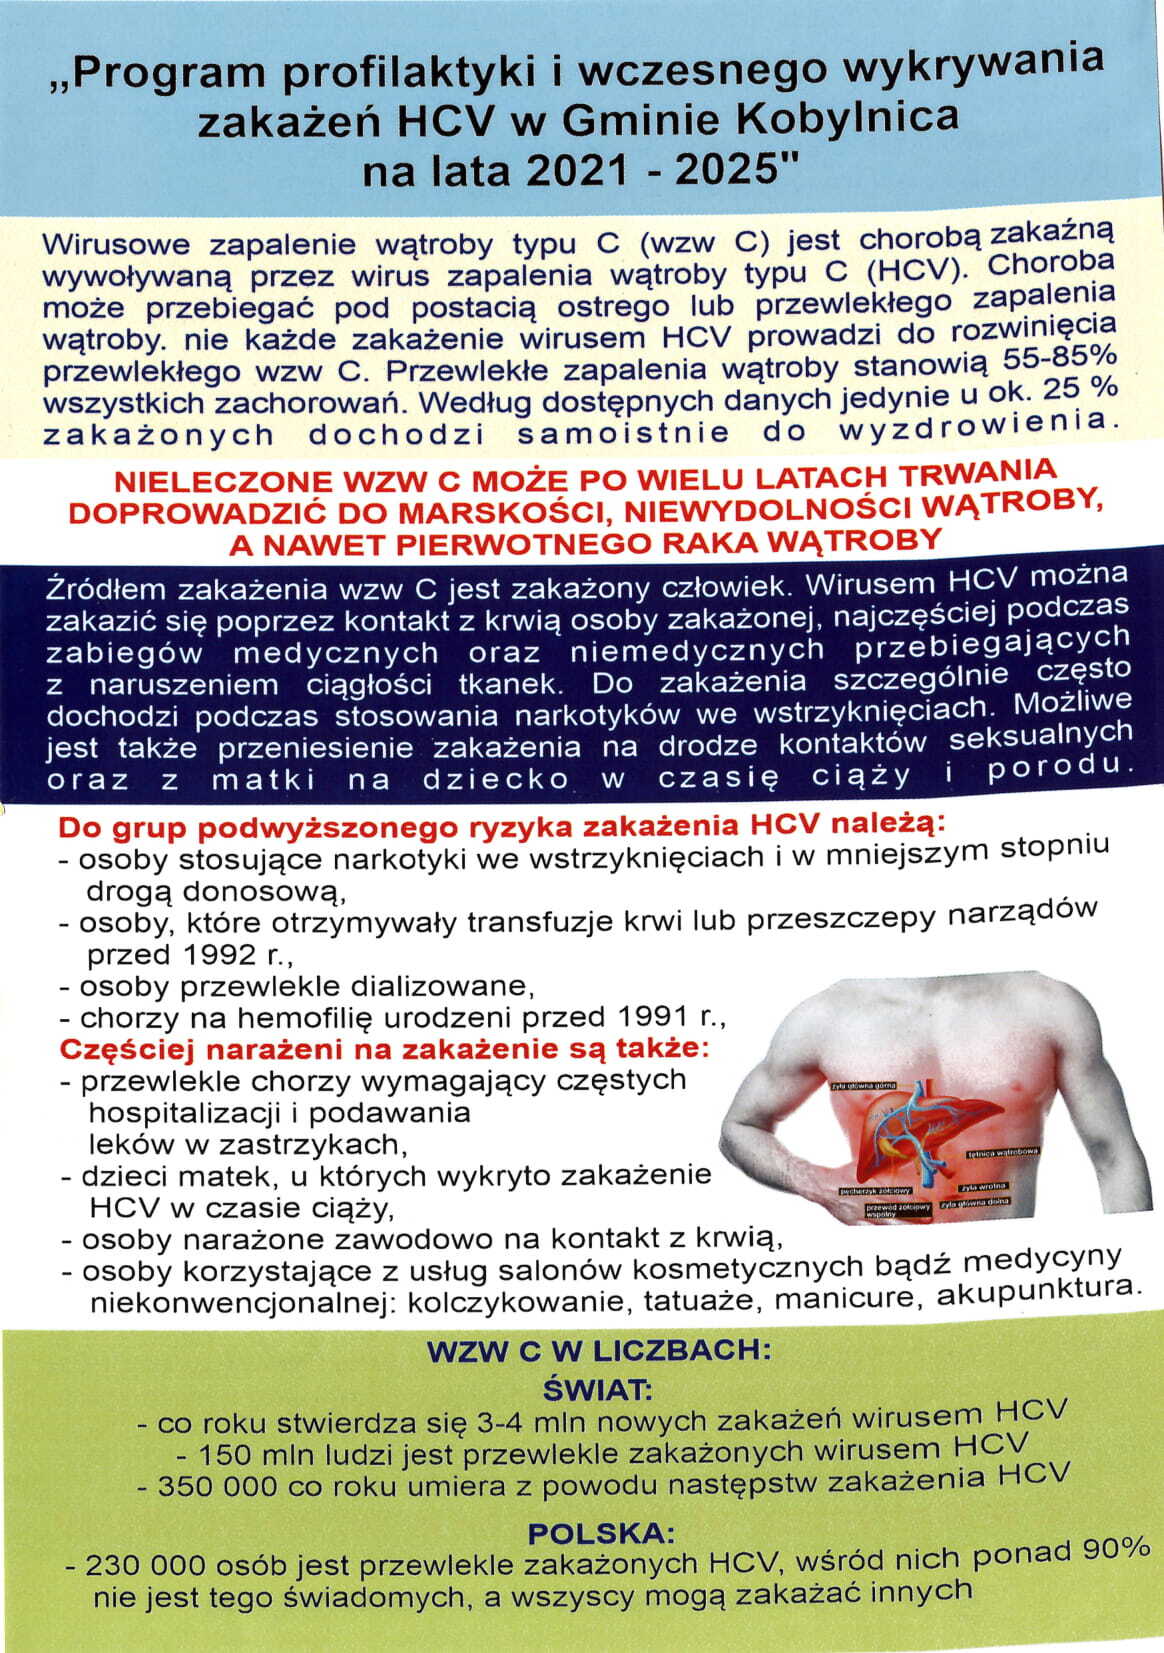 ulotka przedstawiająca program profilaktyki i wczesnego wykrywania HCV w Gminie Kobylnica na lata 2021 – 2025 